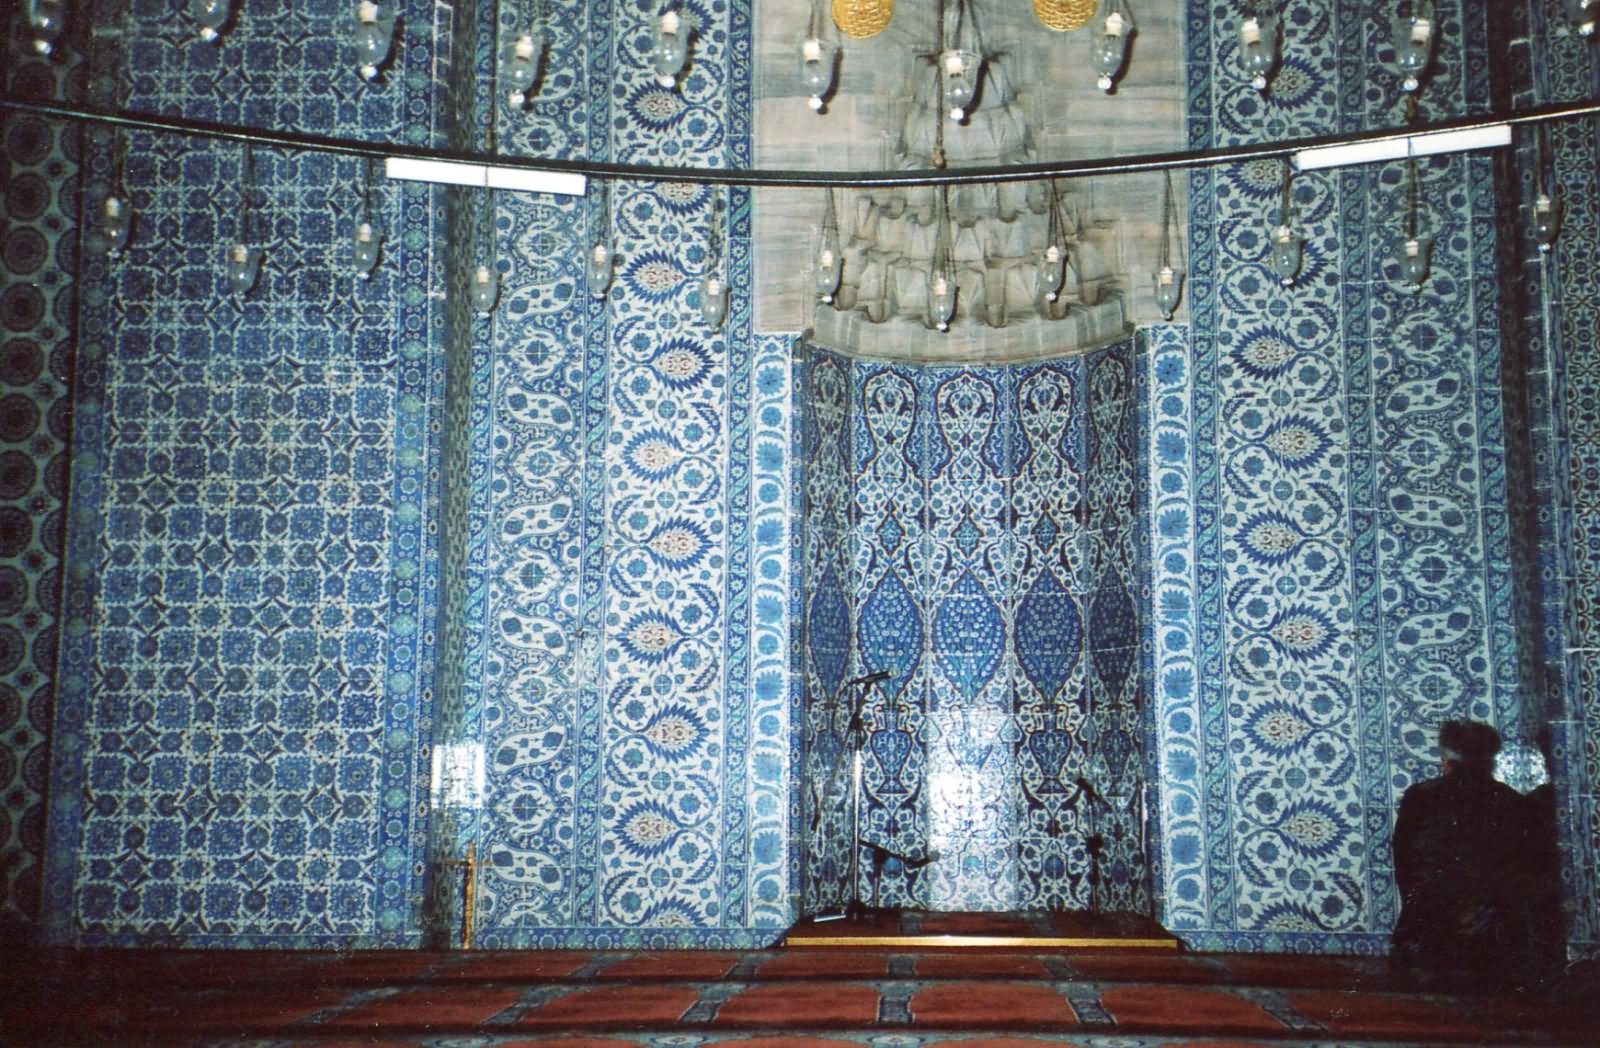 Iznik Tiles Inside The Rustem Pasha Mosque In Istanbul